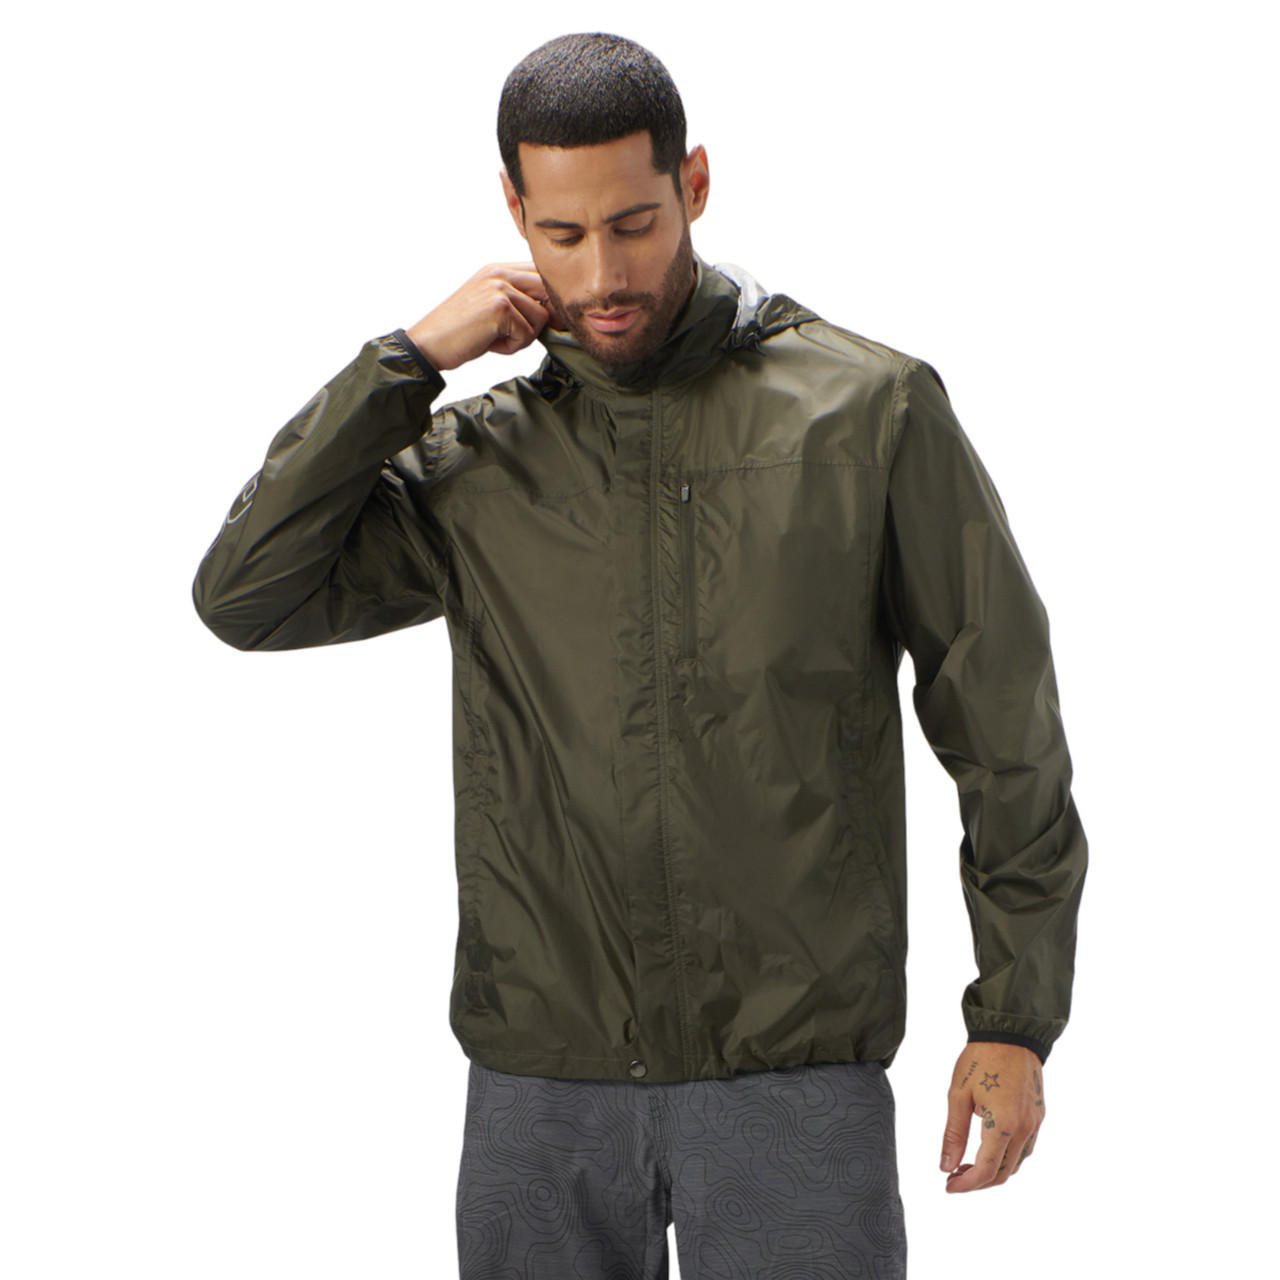 Sea-Doo New OEM, Men's Medium Water-Resistant Windproof Jacket, 4547000677